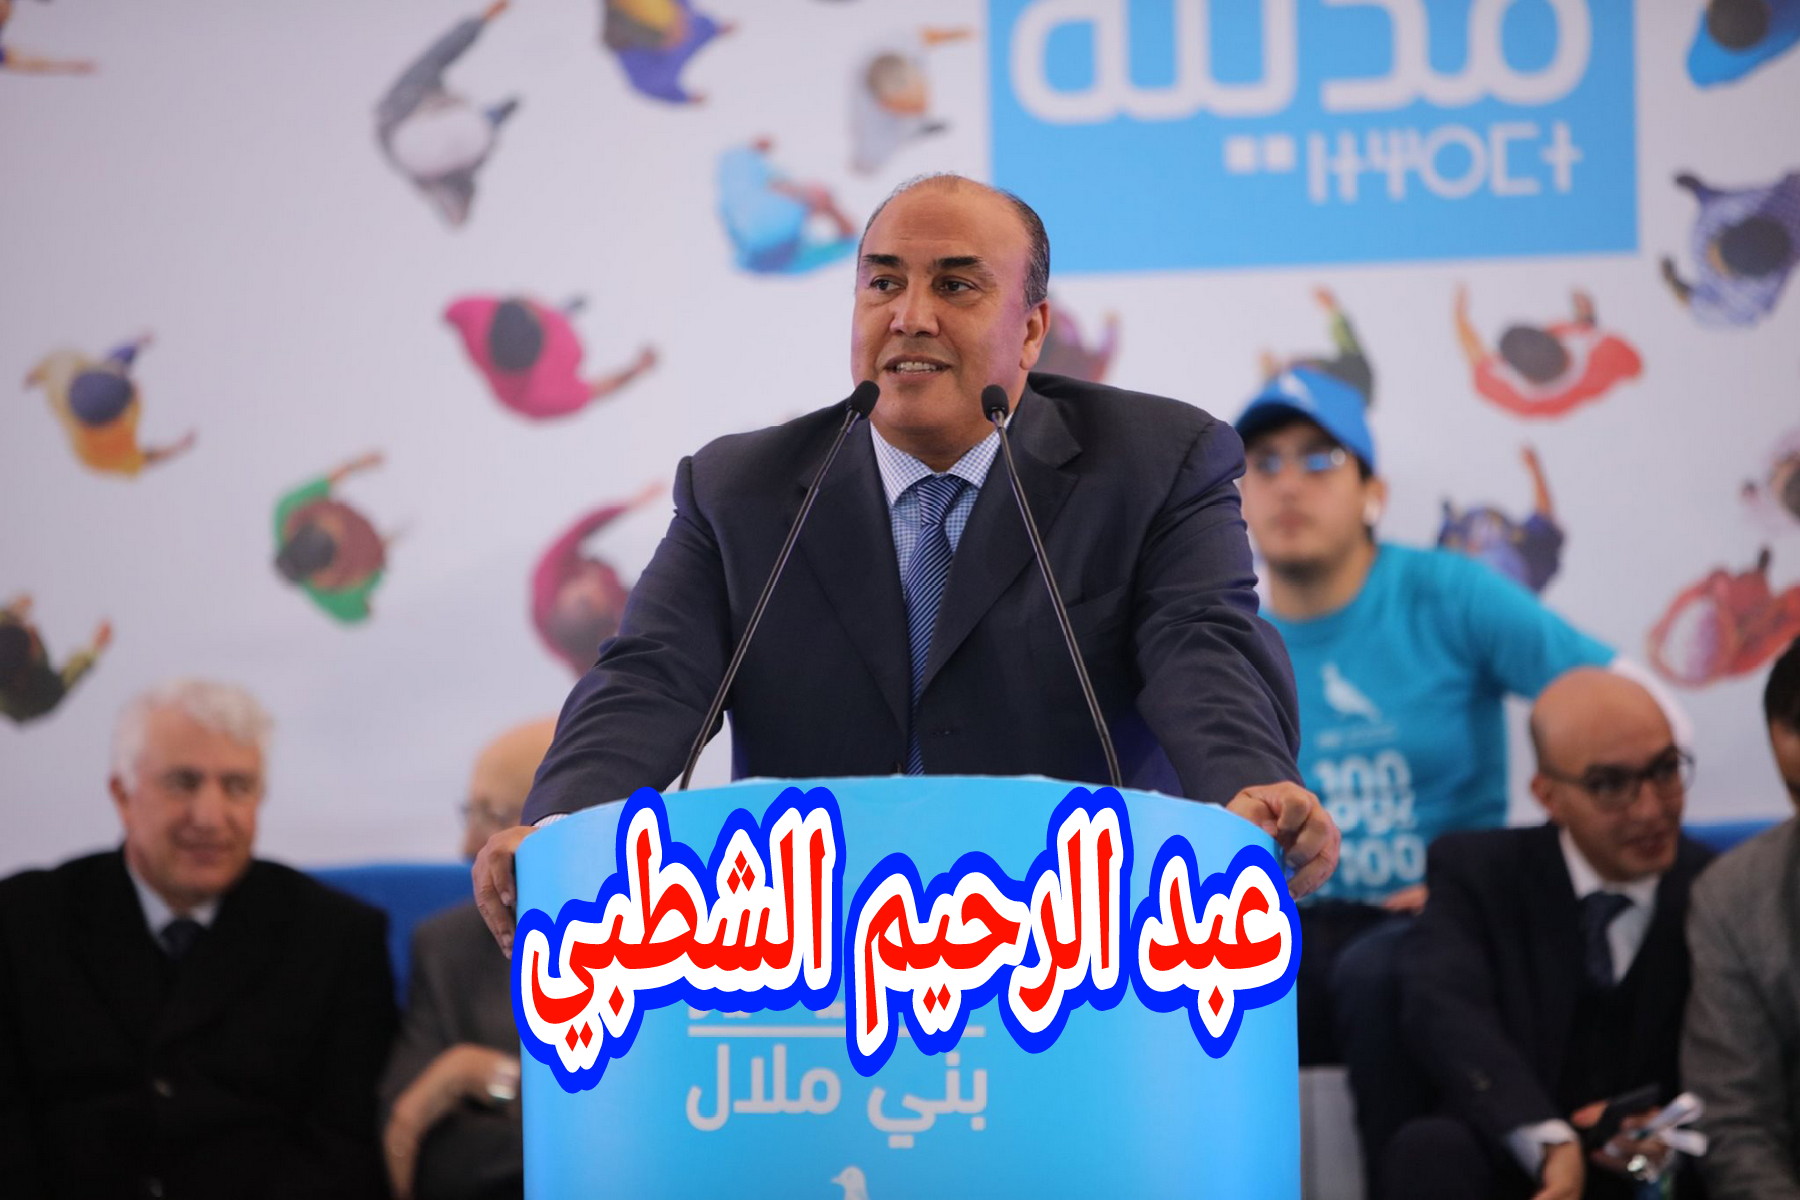 عاجل وكما كان متوقعا… عبد الرحيم الشطبي يفوز بالمقعد البرلماني بدائرة بني ملال